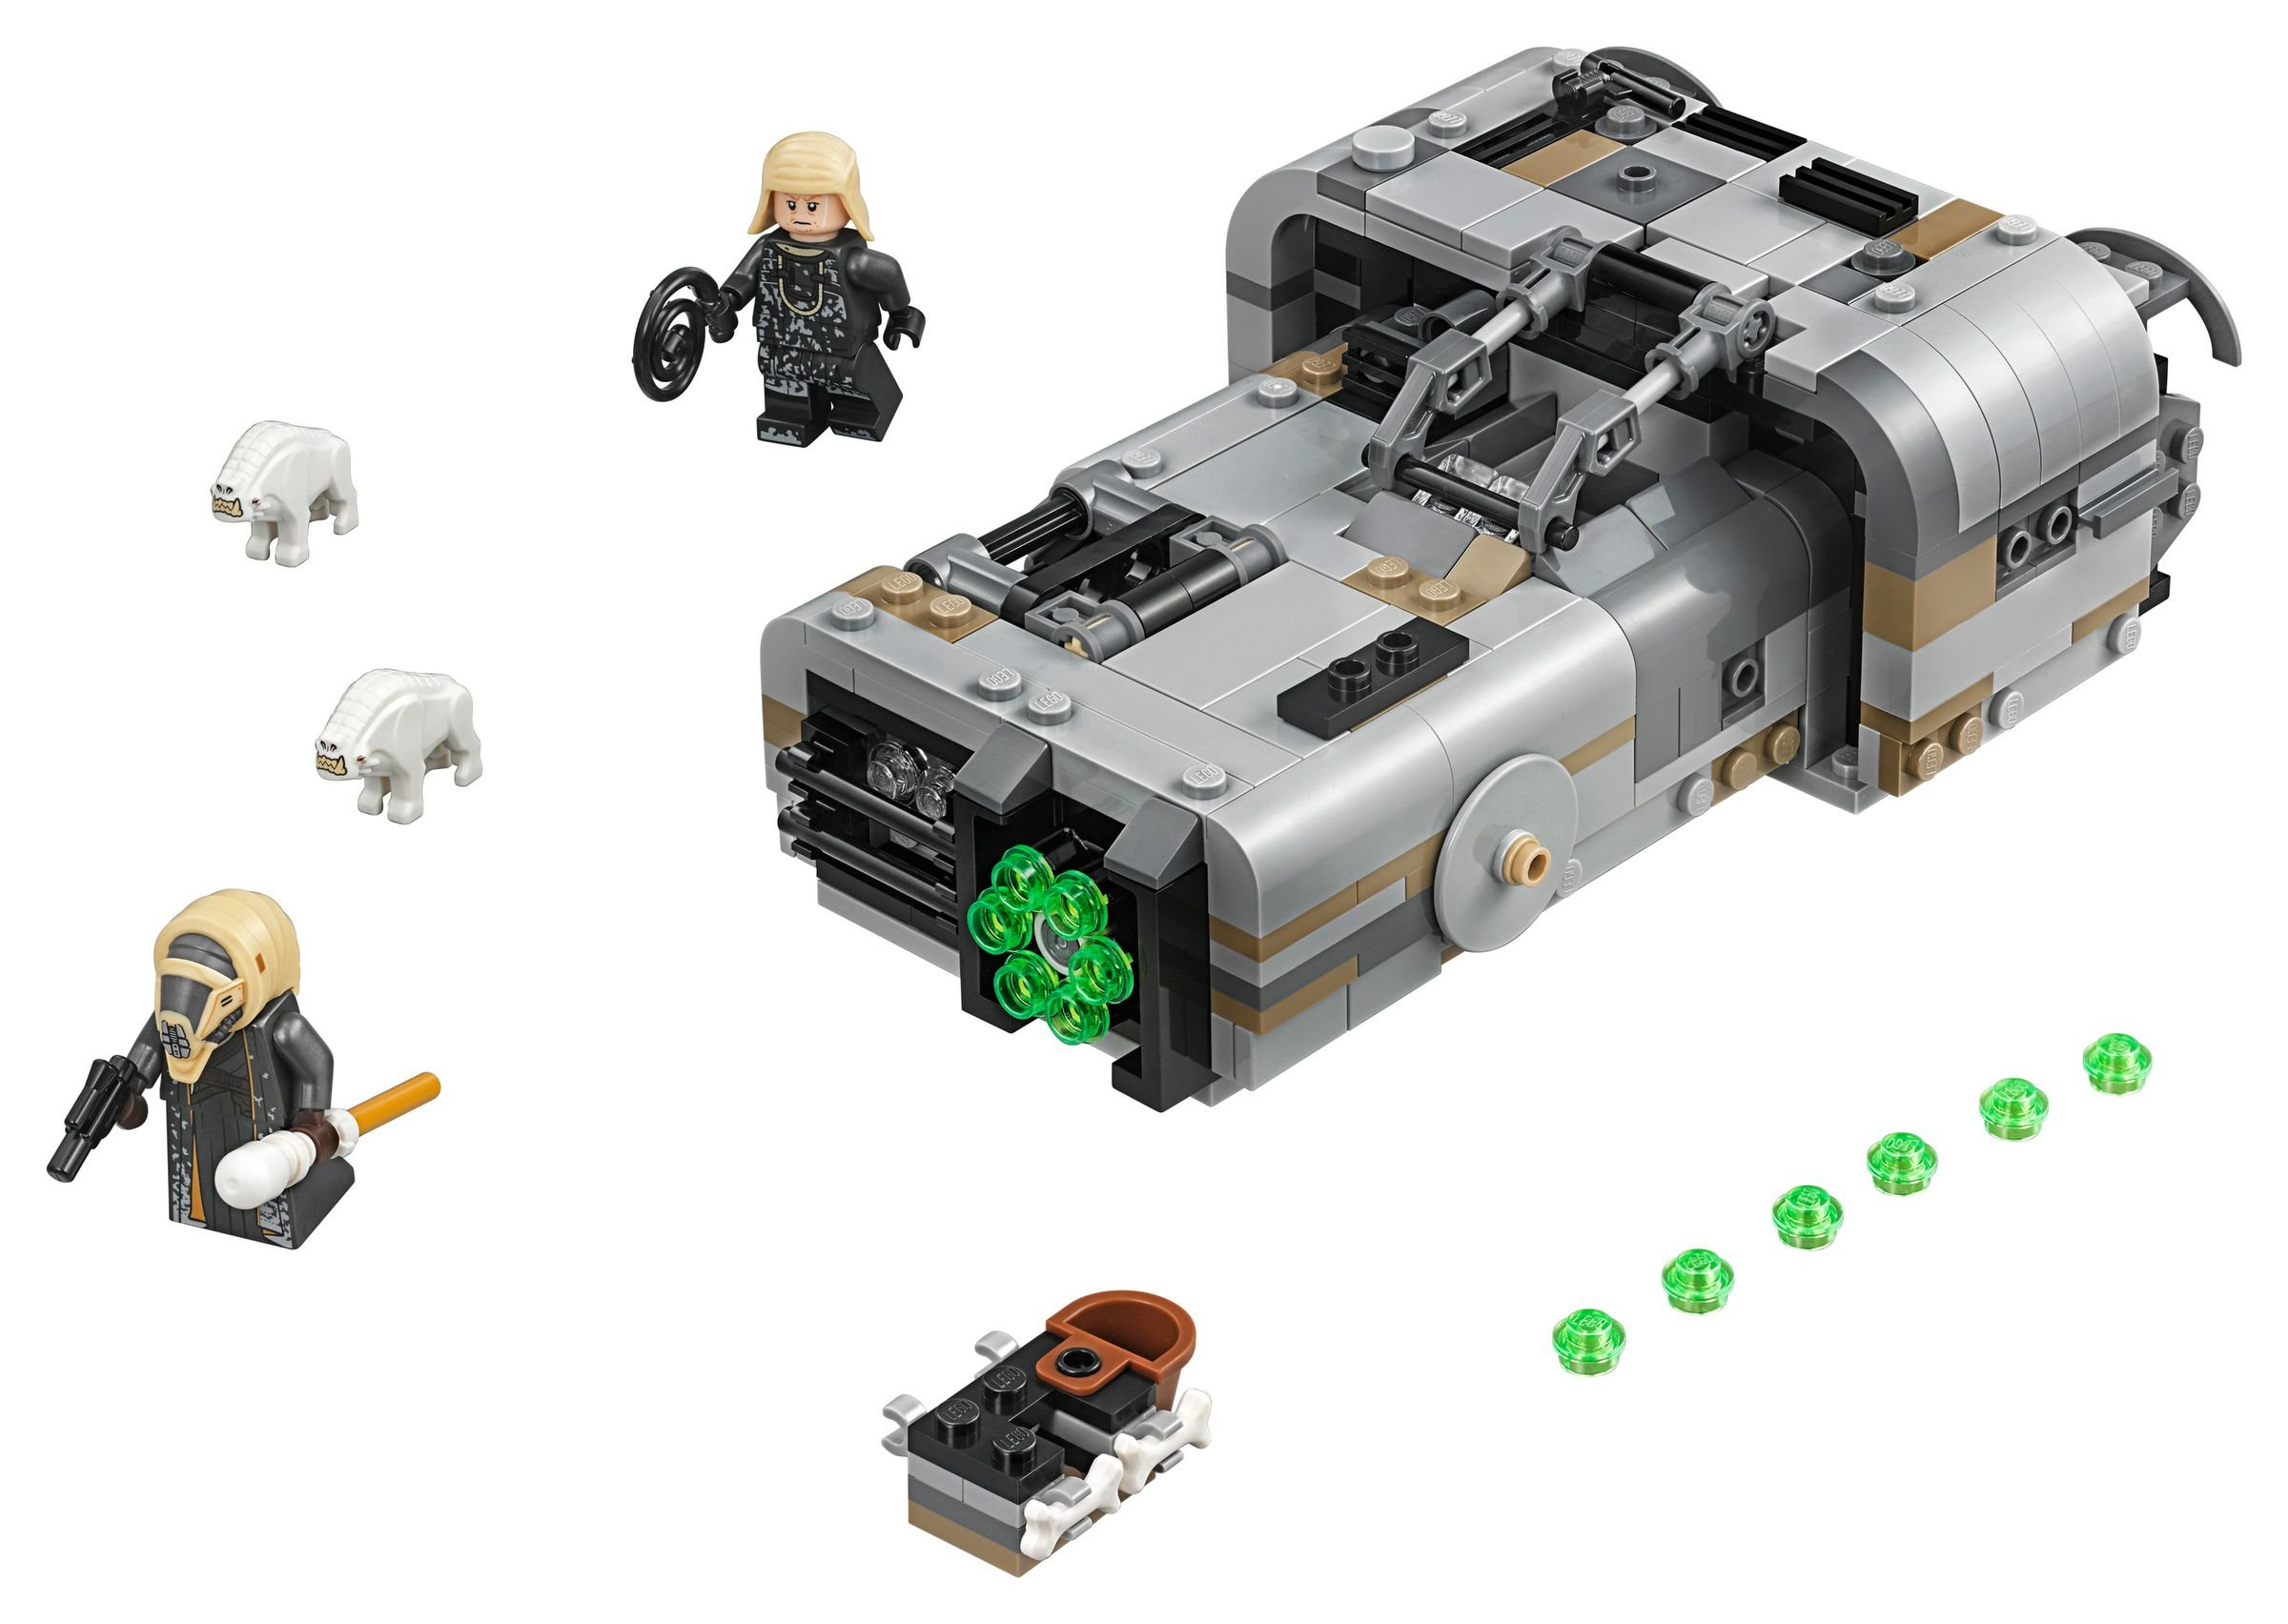 Landspeeder 75210 Molochs Star Wars™ LEGO Bausatz